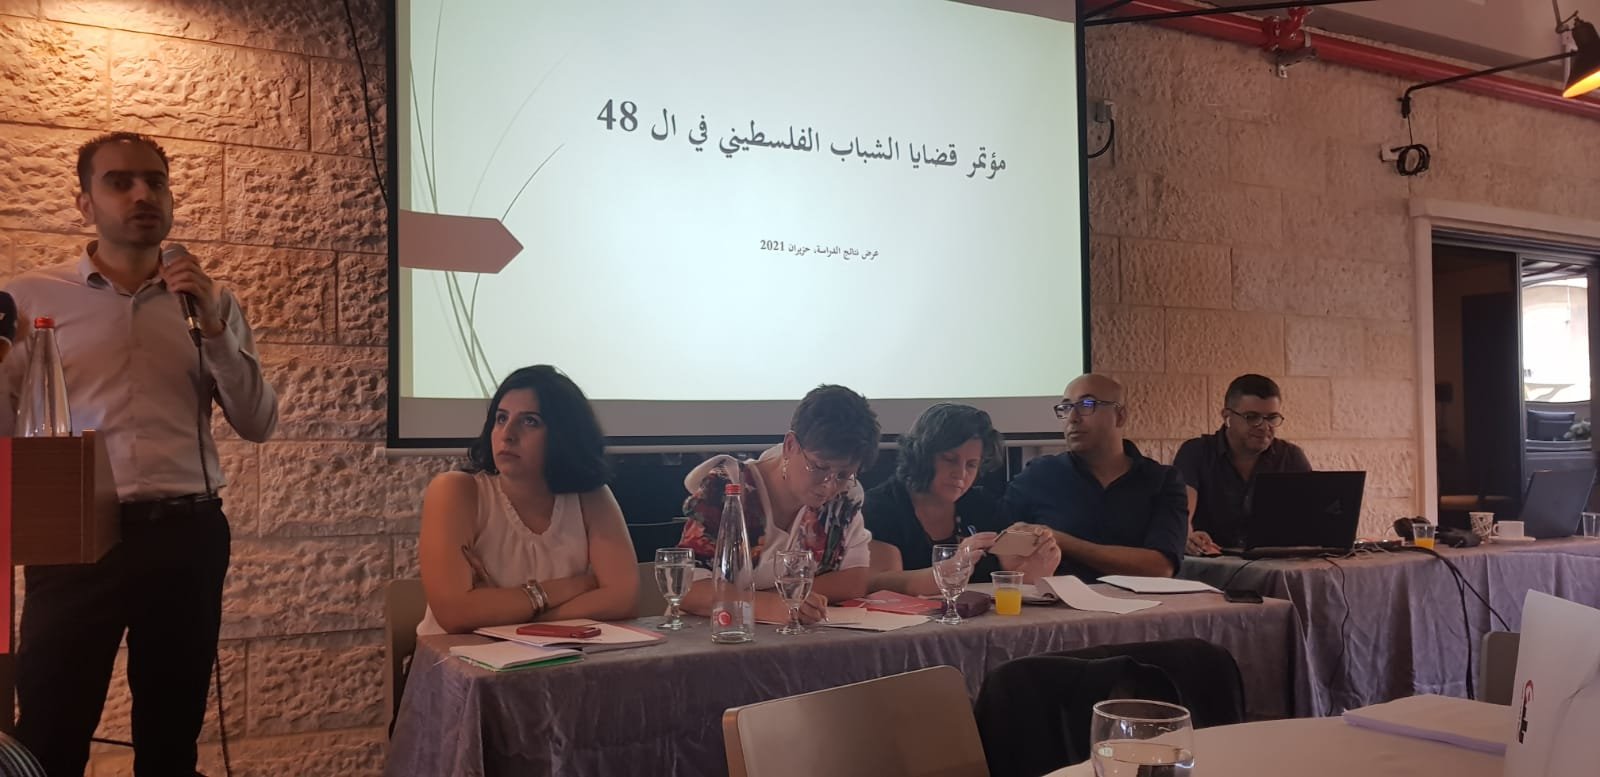 مؤتمر "قضايا الشباب": عرض نتائج بحث حول احتياجات وتصورات ومواقف الشباب في الداخل الفلسطيني-5